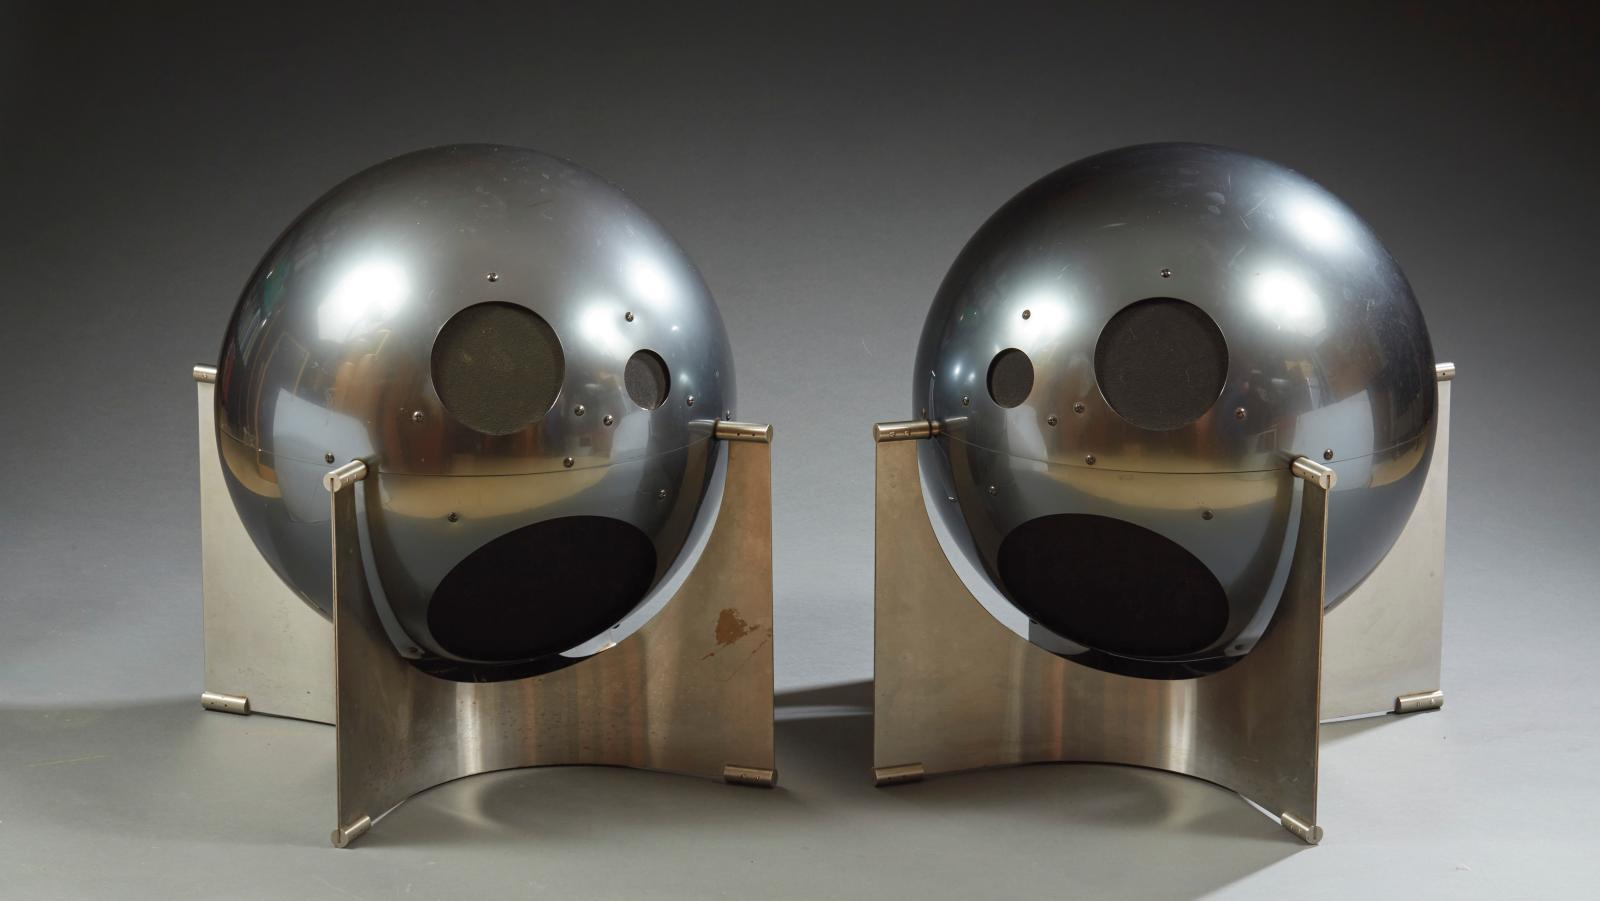 Helium, paire d’enceintes trois voies en métal équipées de haut-parleurs Philips,... Helium, la hi-fi pop qui décolle